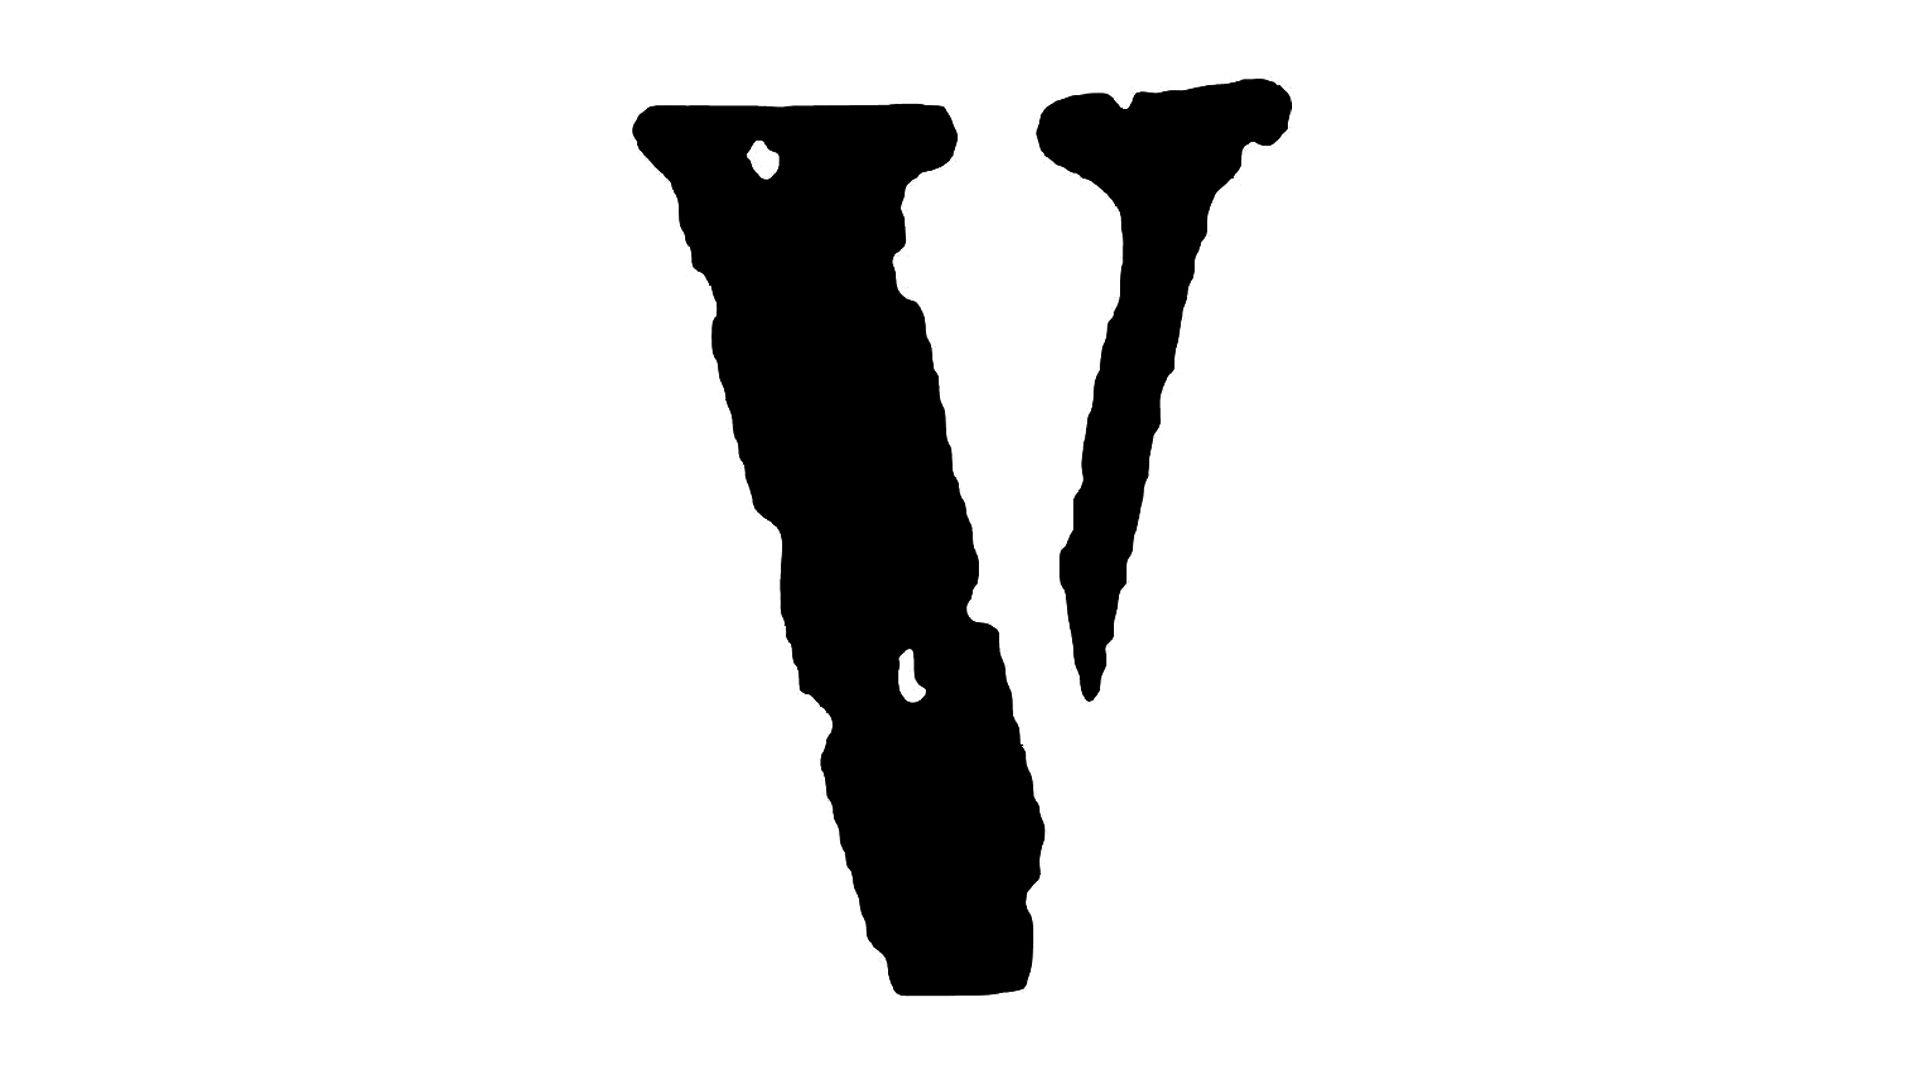 Brnd Vlone Logo - Vlone Logo, Vlone Symbol, Meaning, History and Evolution